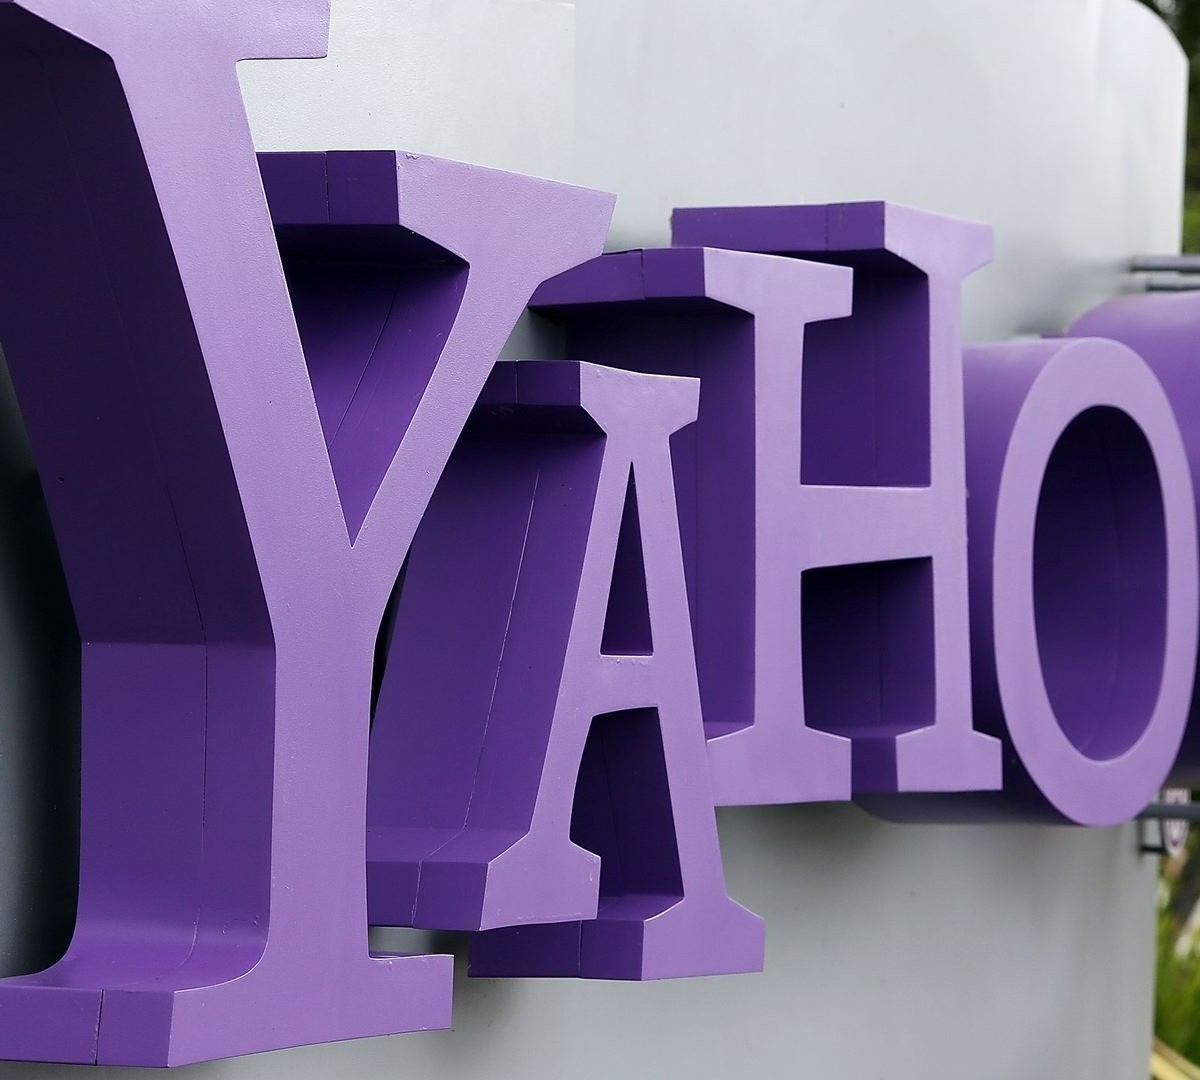 Yahoo Respostas será desativado em maio de 2021, Tecnologia